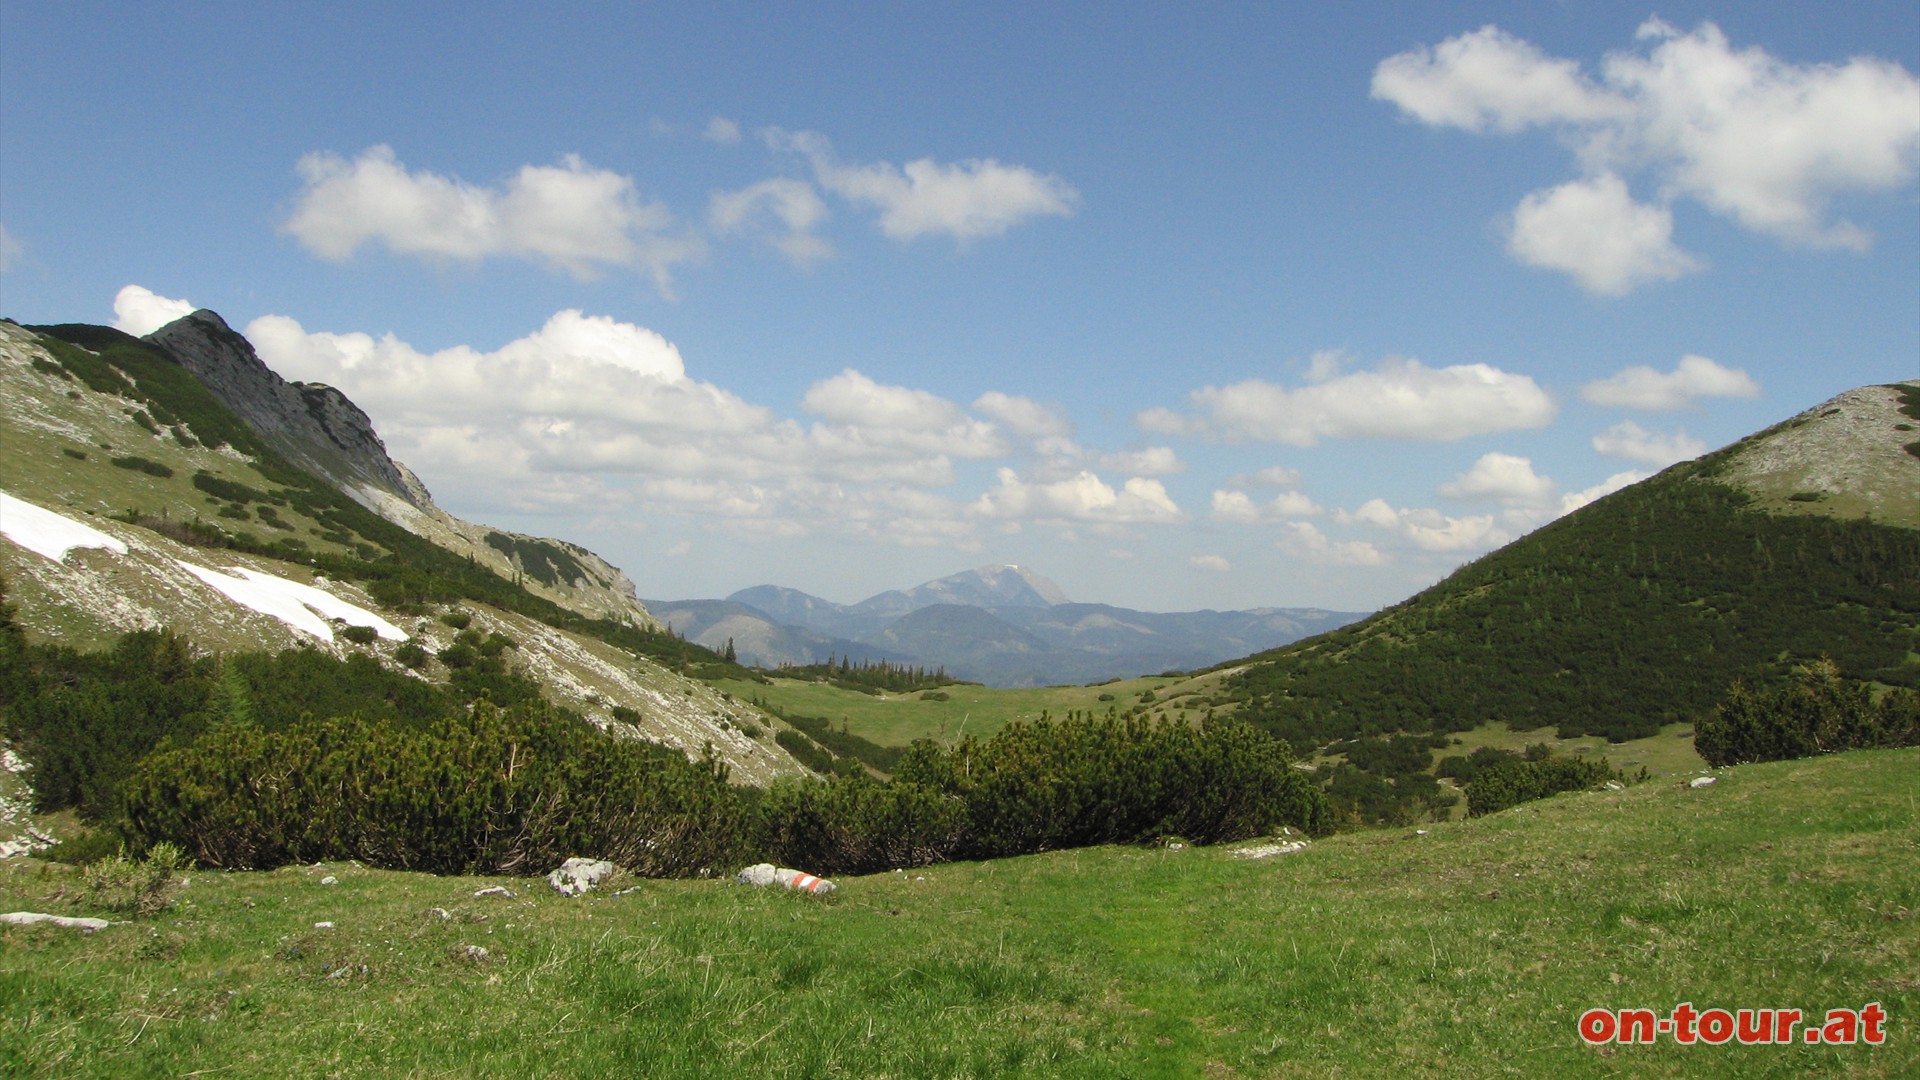 Rückblick: In der Mitte der Ötscher, links der Fadenkamp und rechts  noch der aufsteigende Hang des Graskogel.